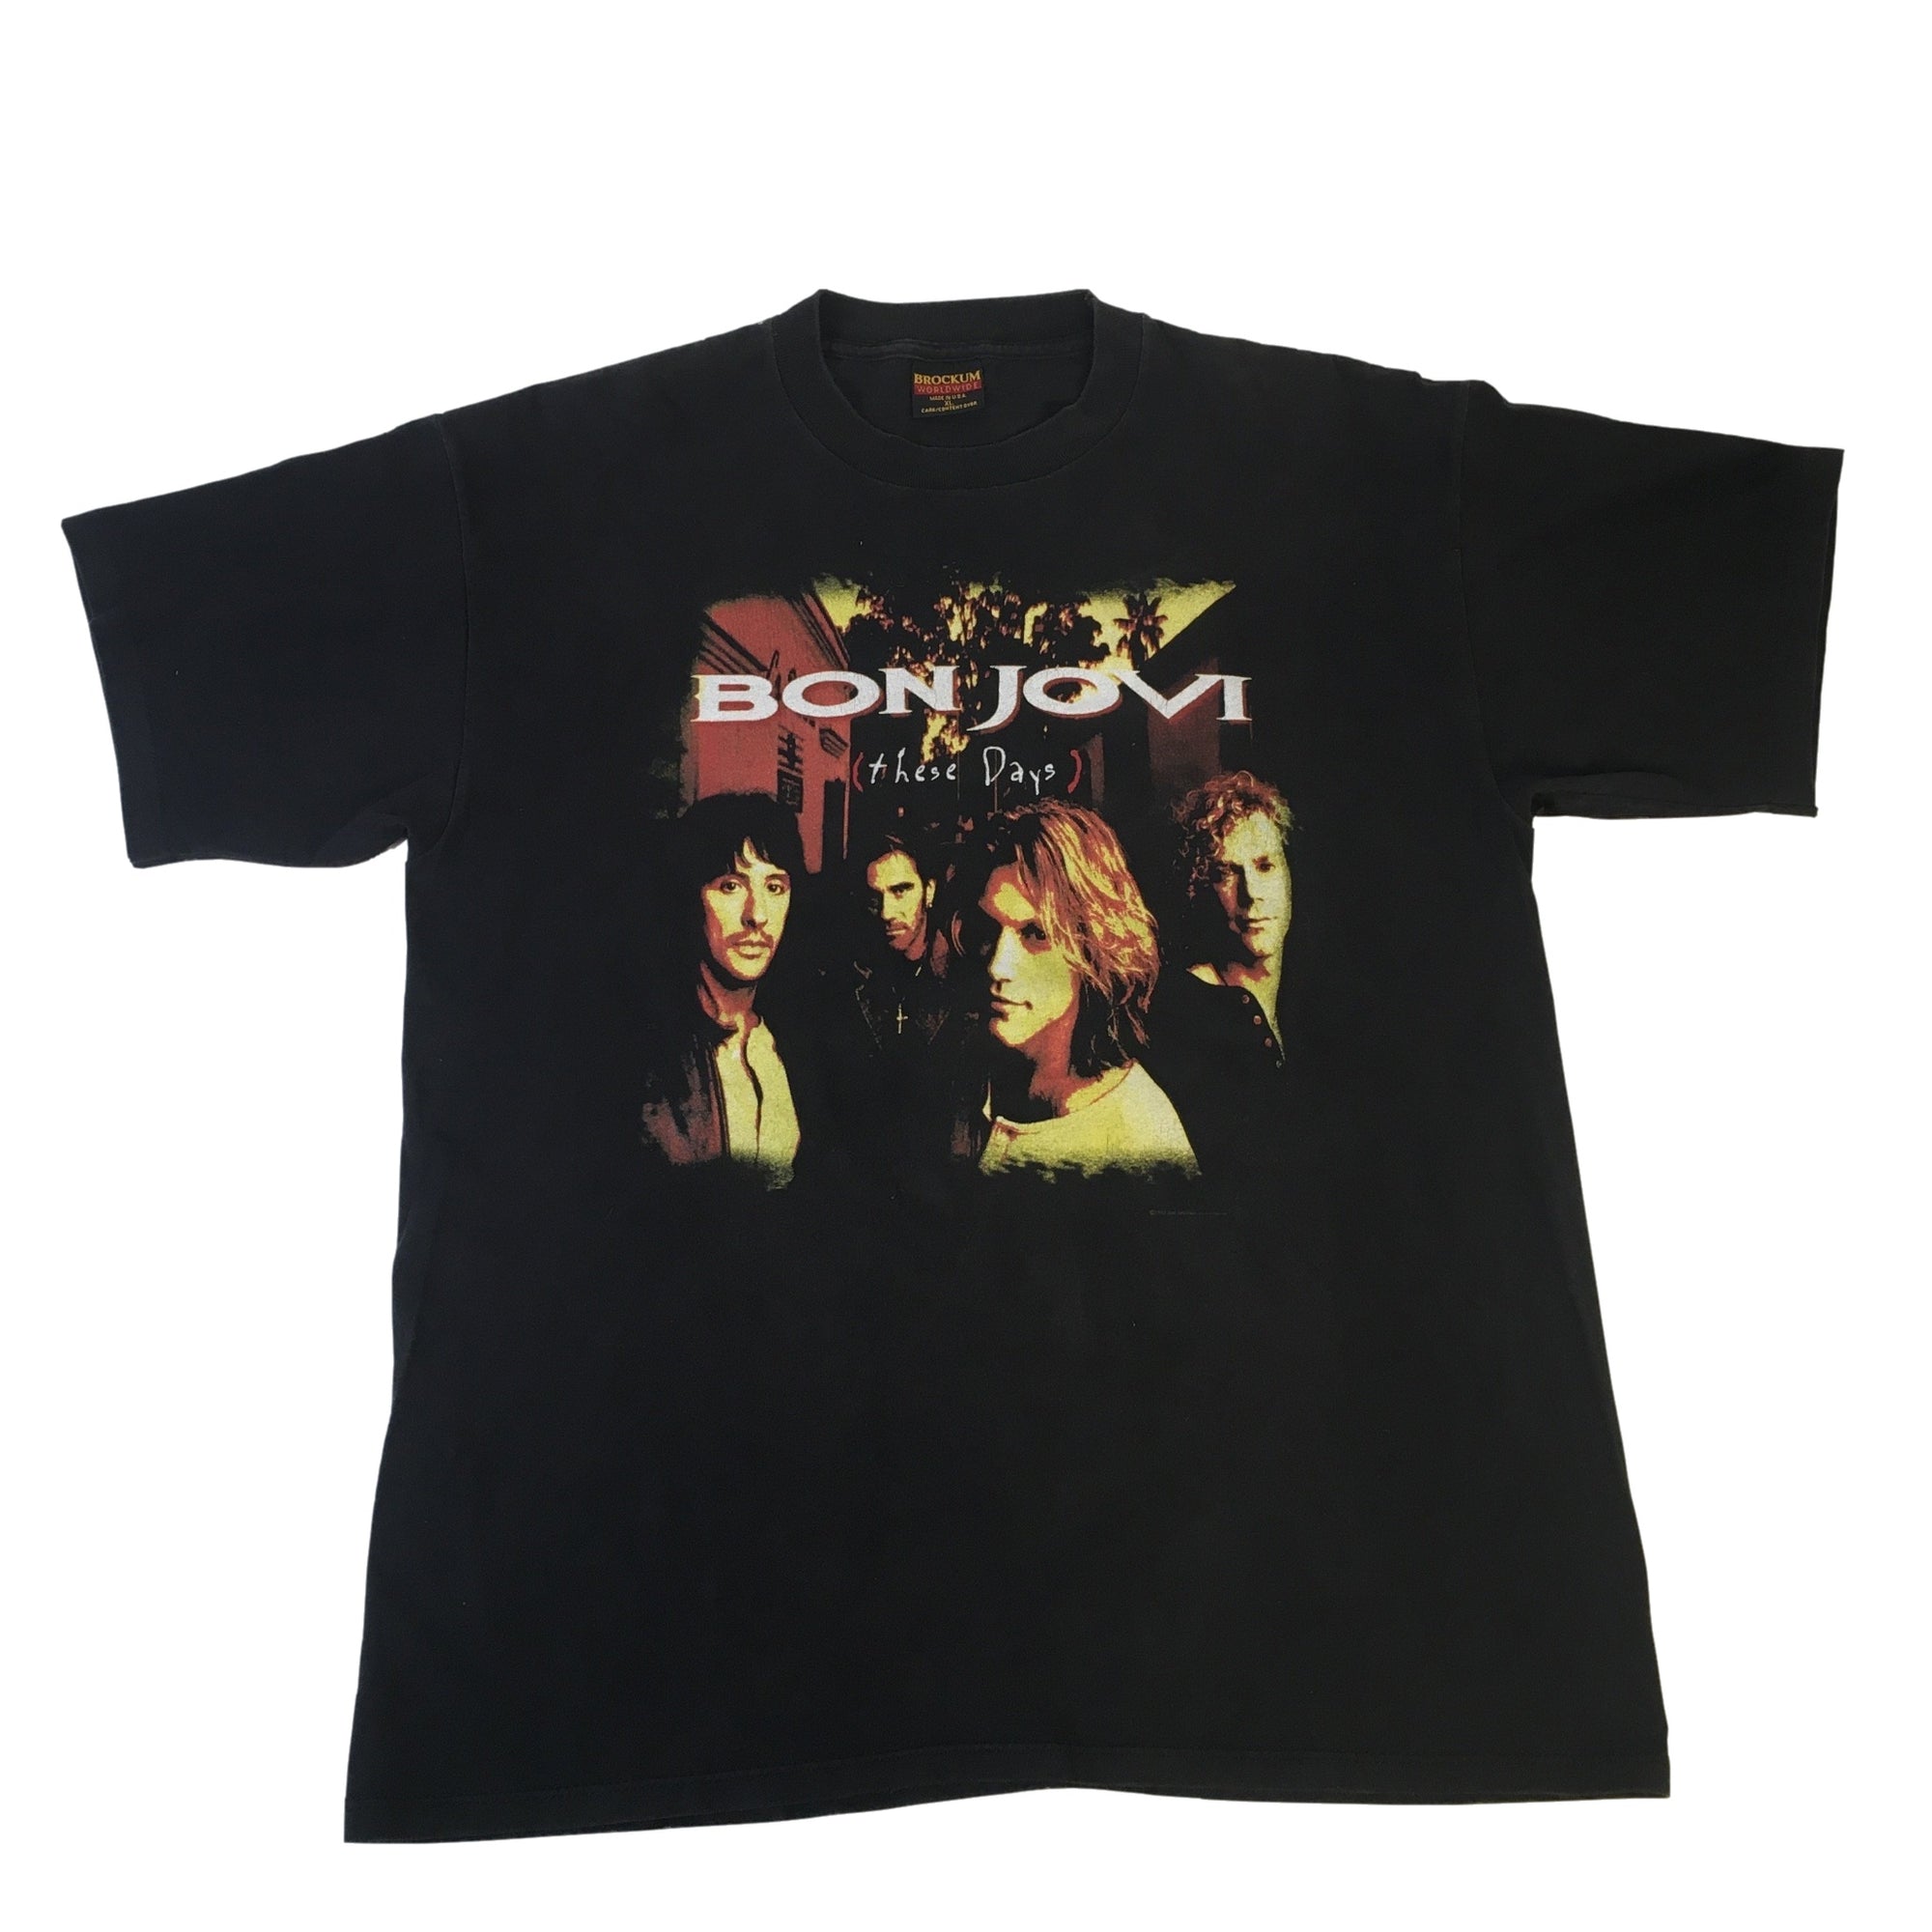 Vintage Bon Jovi "These Days" T-Shirt - jointcustodydc